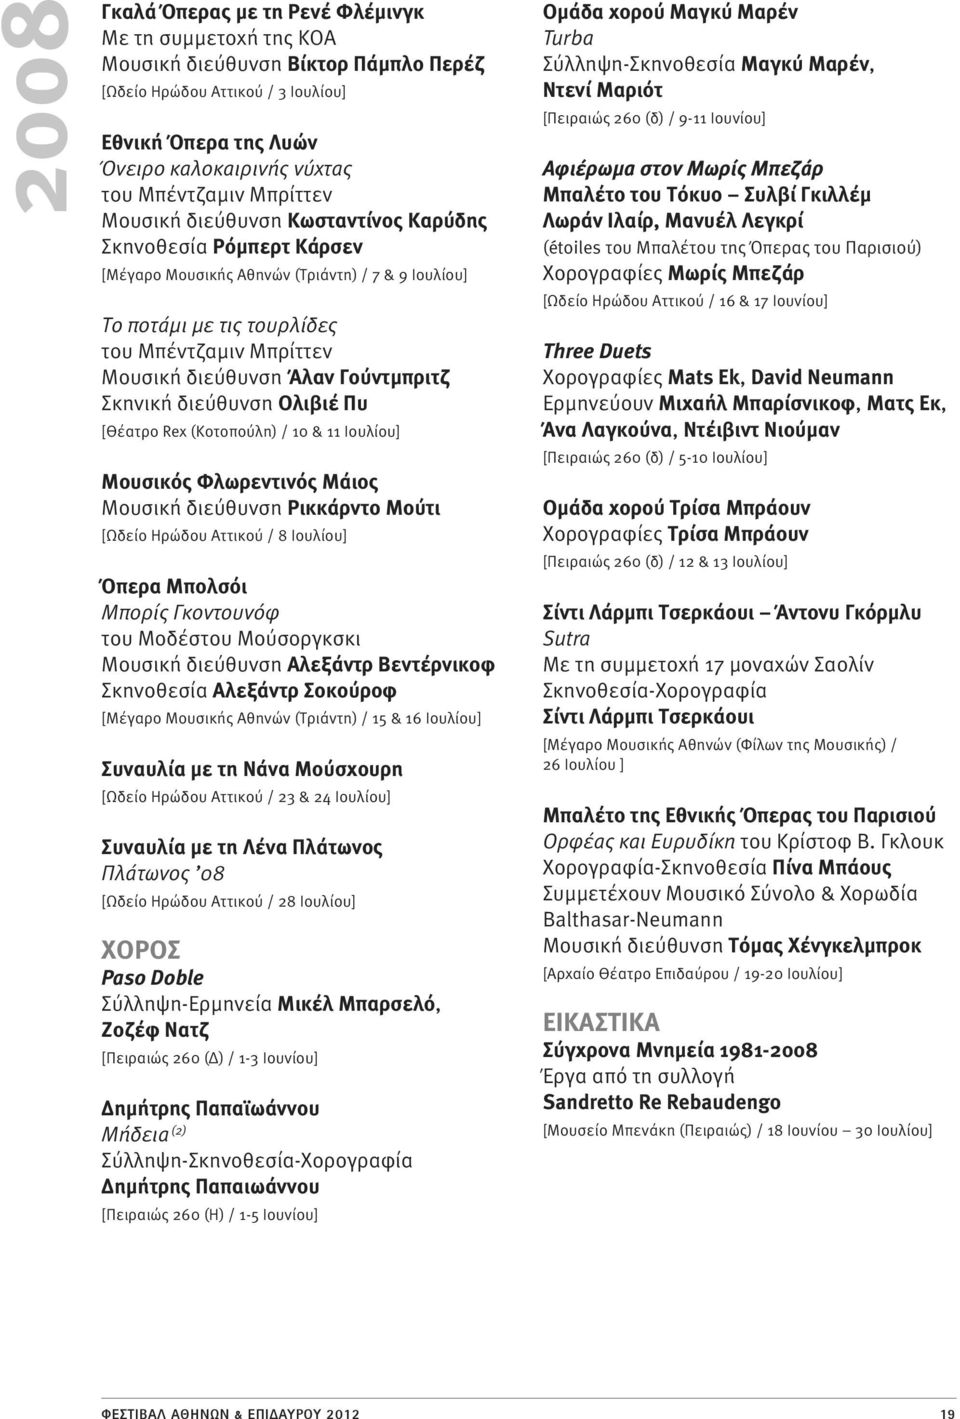 Γούντμπριτζ Σκηνική διεύθυνση Ολιβιέ Πυ [Θέατρο Rex (Κοτοπούλη) / 10 & 11 Ιουλίου] Μουσικός Φλωρεντινός Μάιος Μουσική διεύθυνση Ρικκάρντο Μούτι [Ωδείο Ηρώδου Αττικού / 8 Ιουλίου] Όπερα Μπολσόι Μπορίς